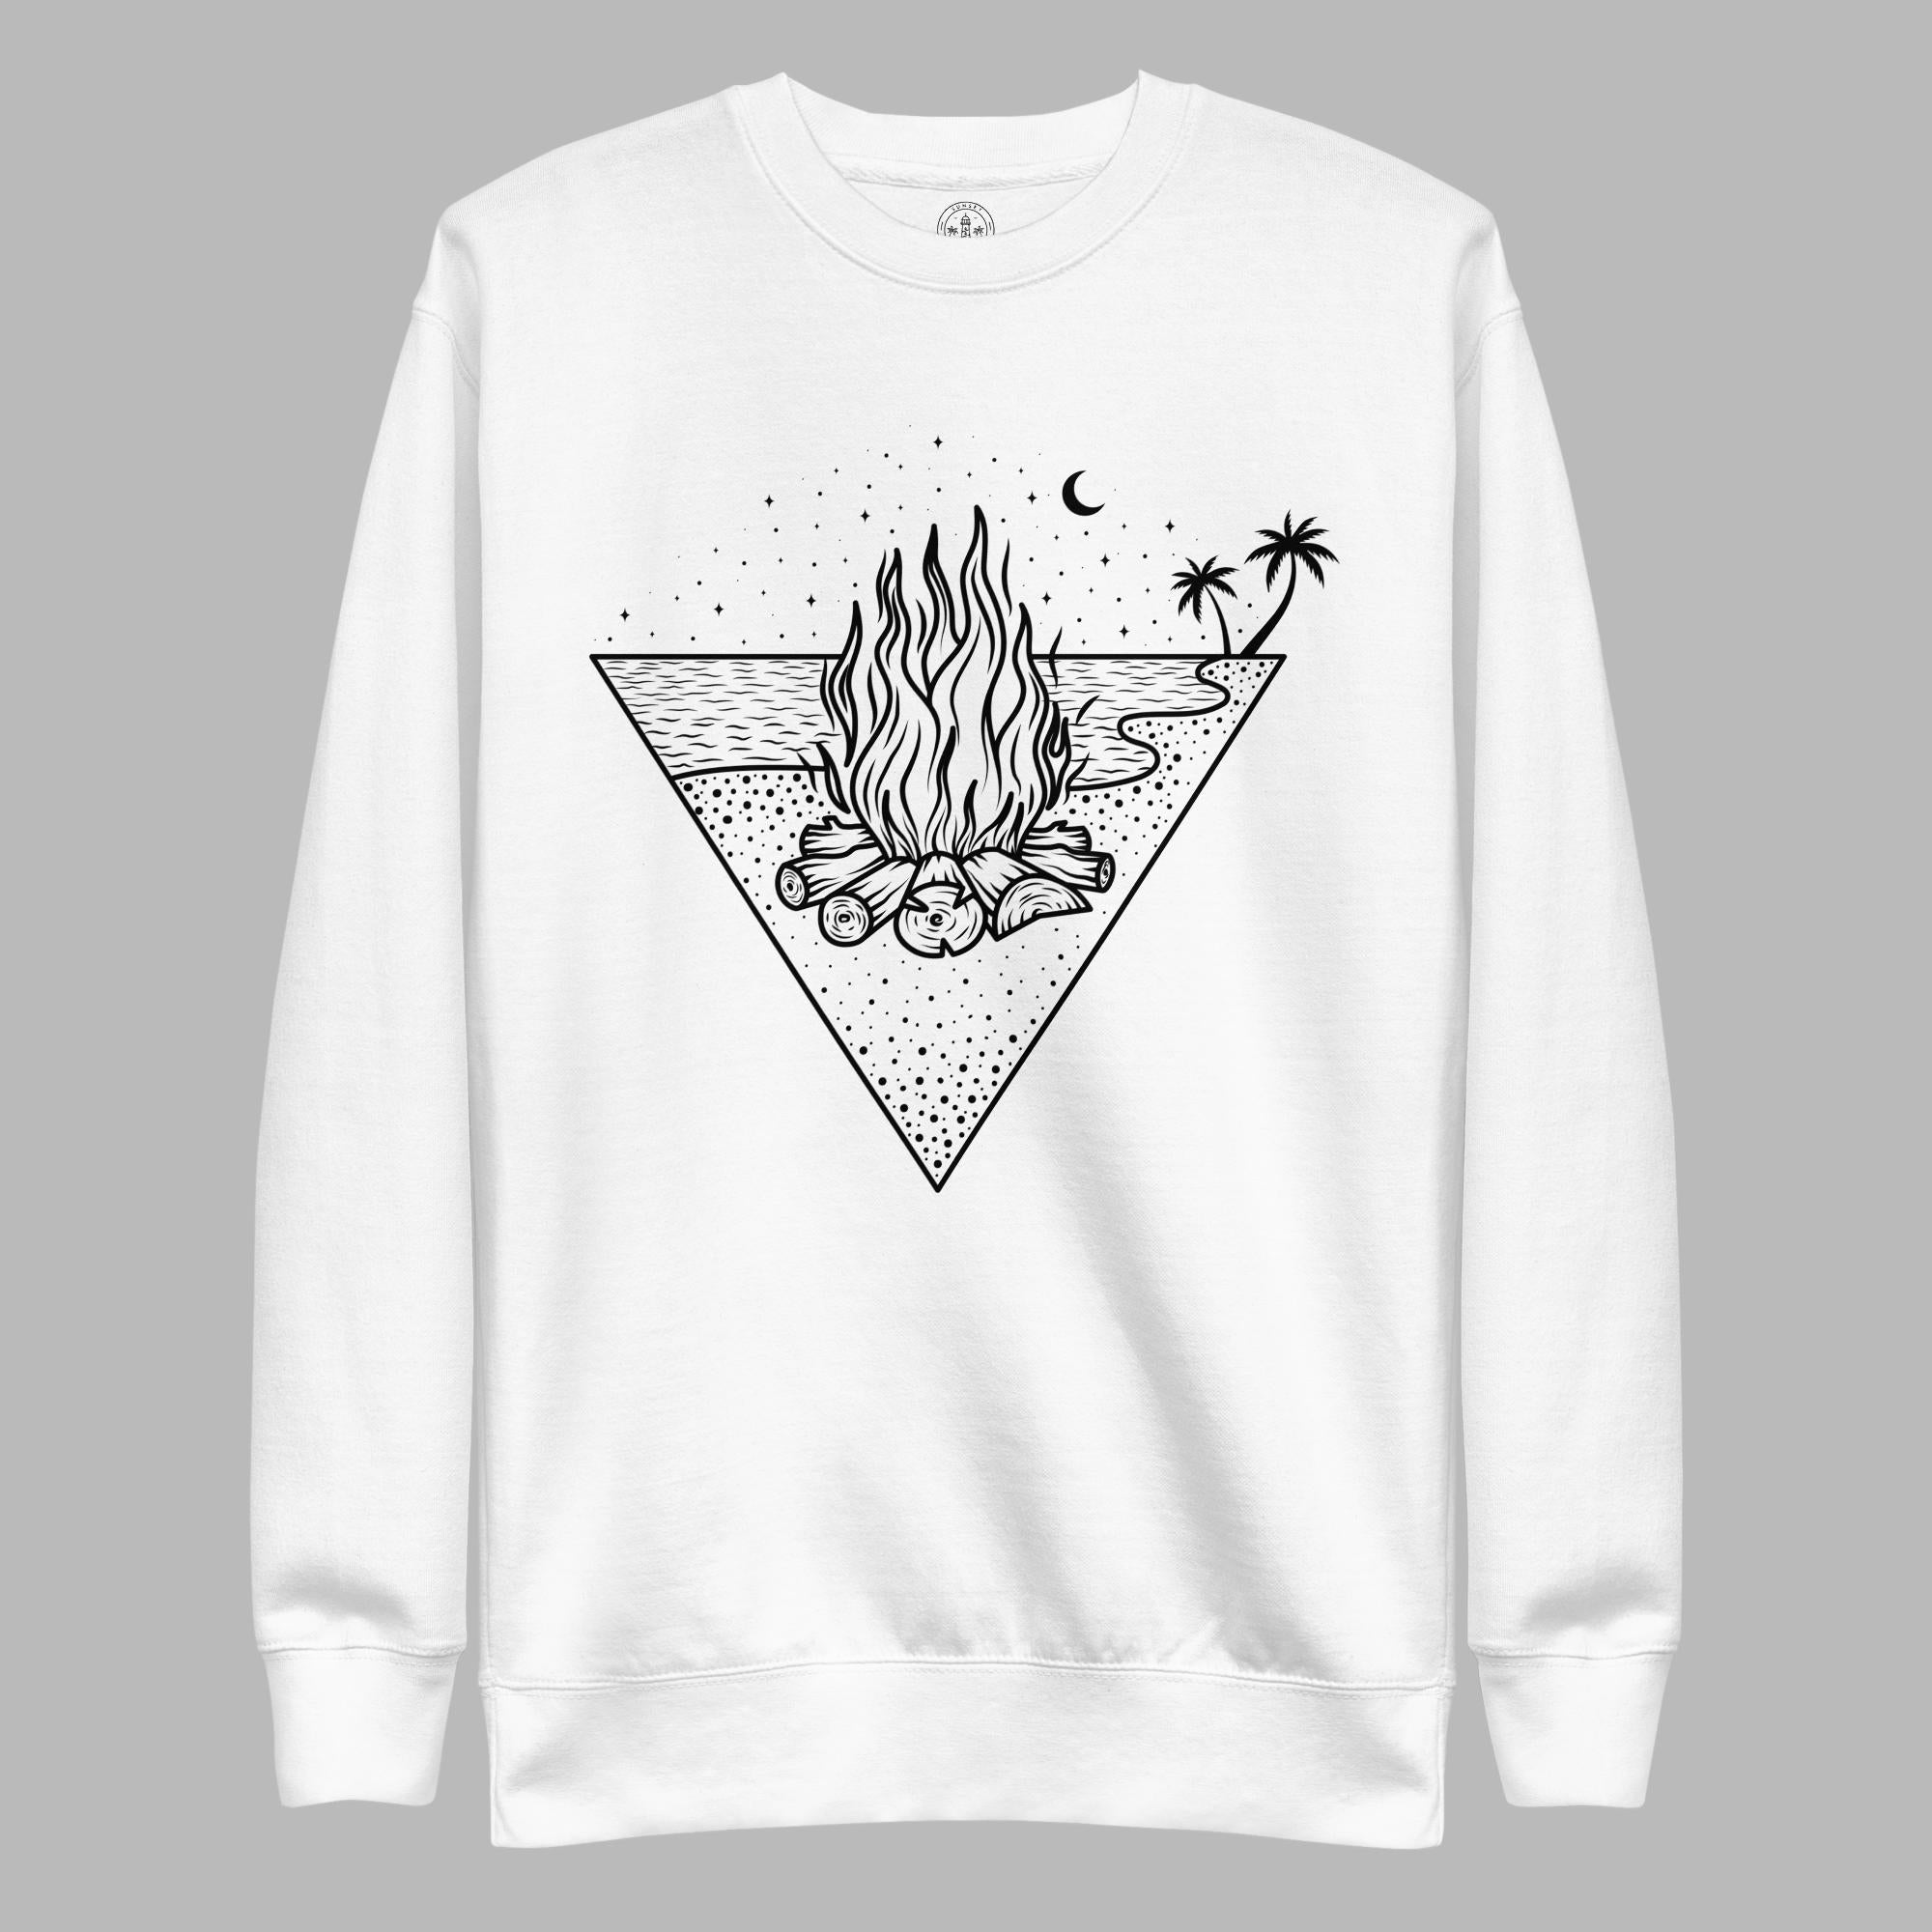 Men's Premium Sweatshirt - Campfire